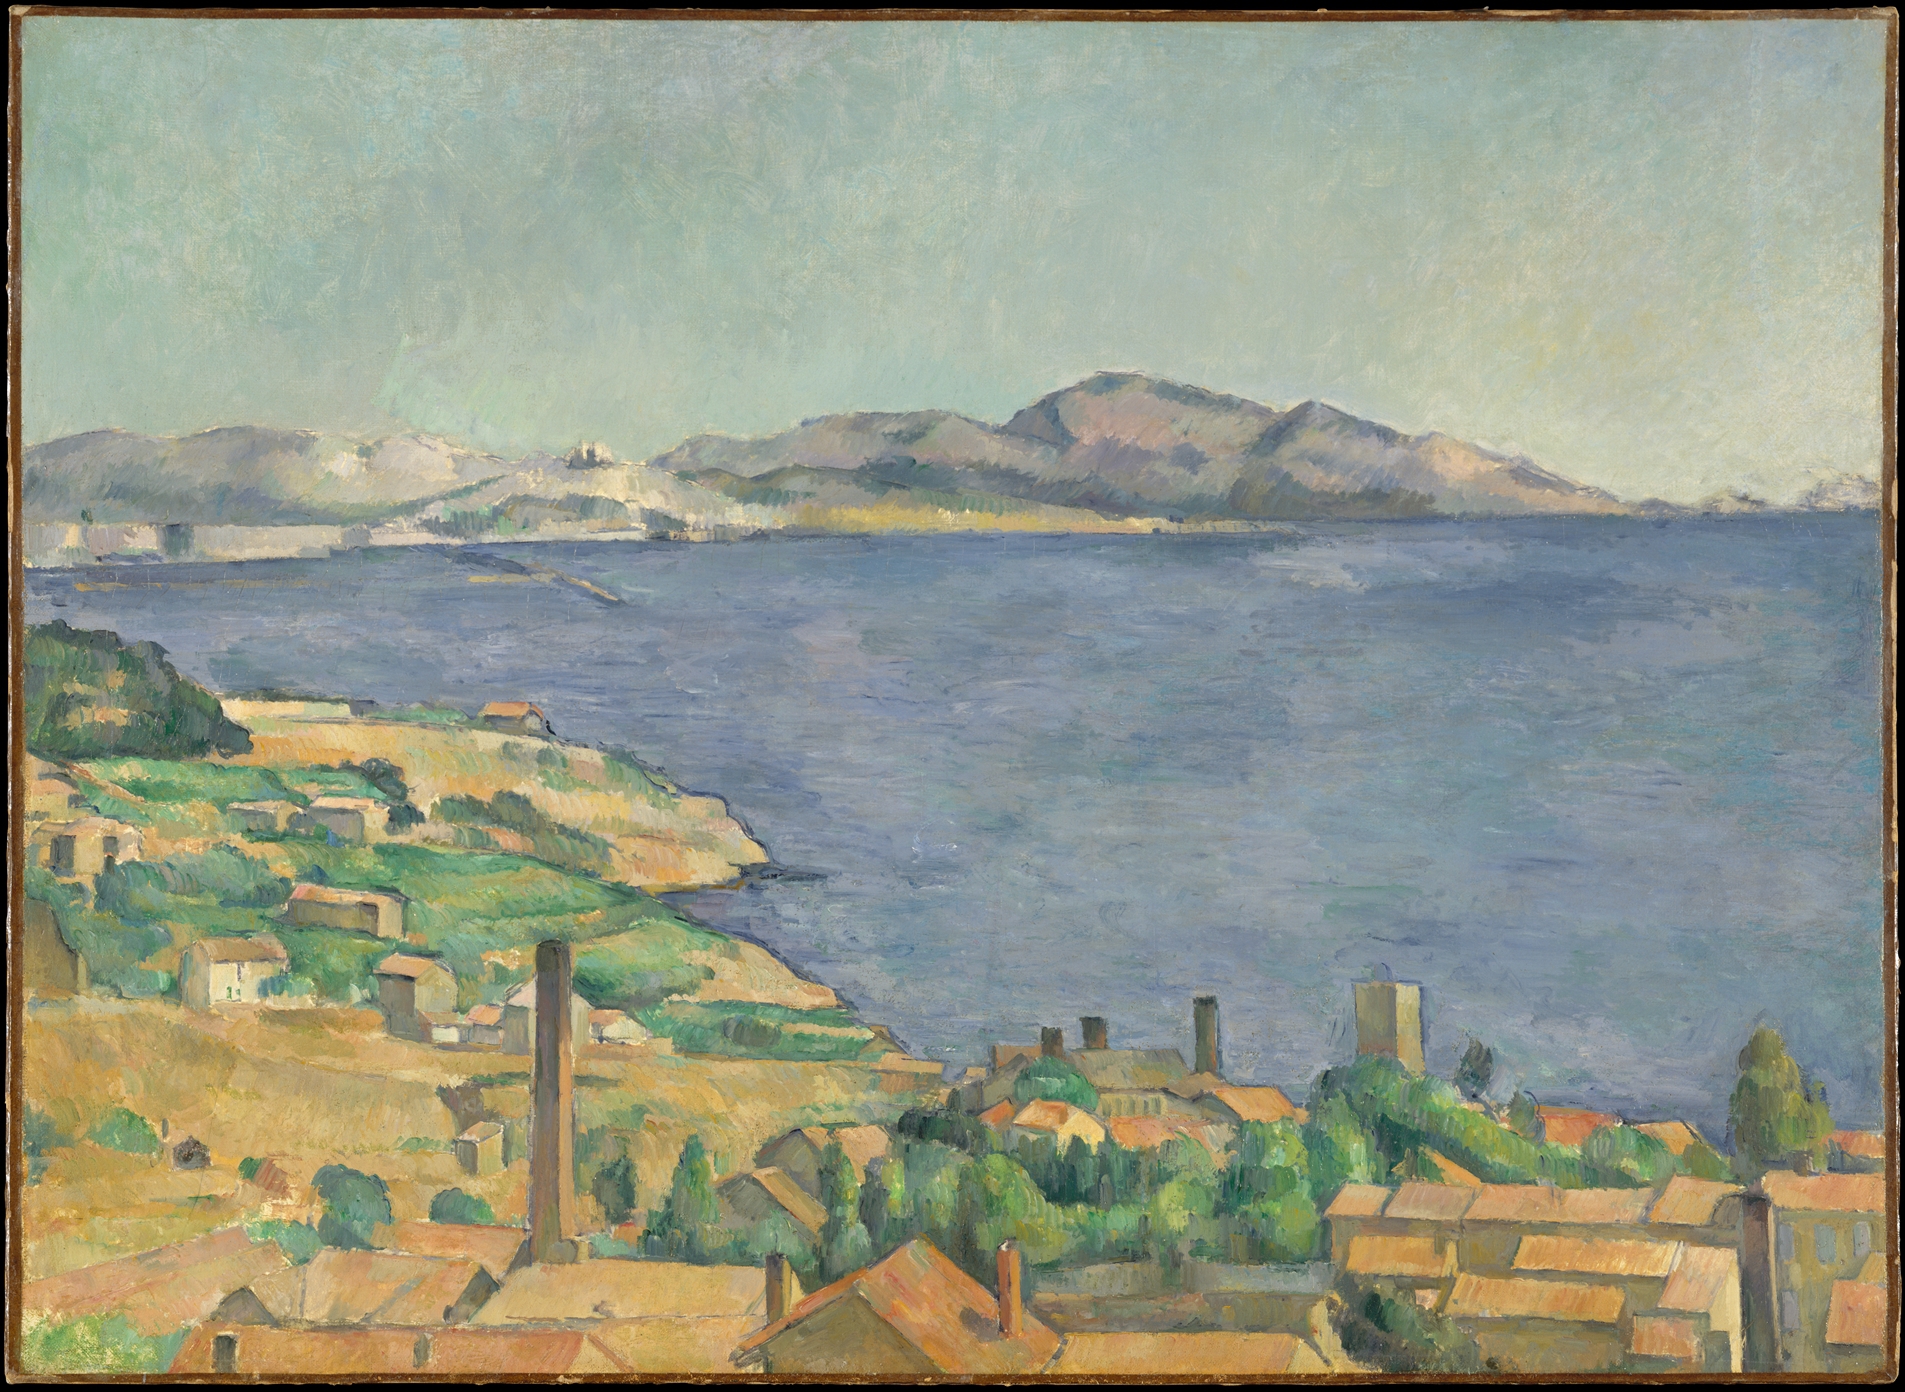 從埃斯塔克看馬賽灣 by Paul Cézanne - 約 1885 年 - 73 x 100.3 釐米 